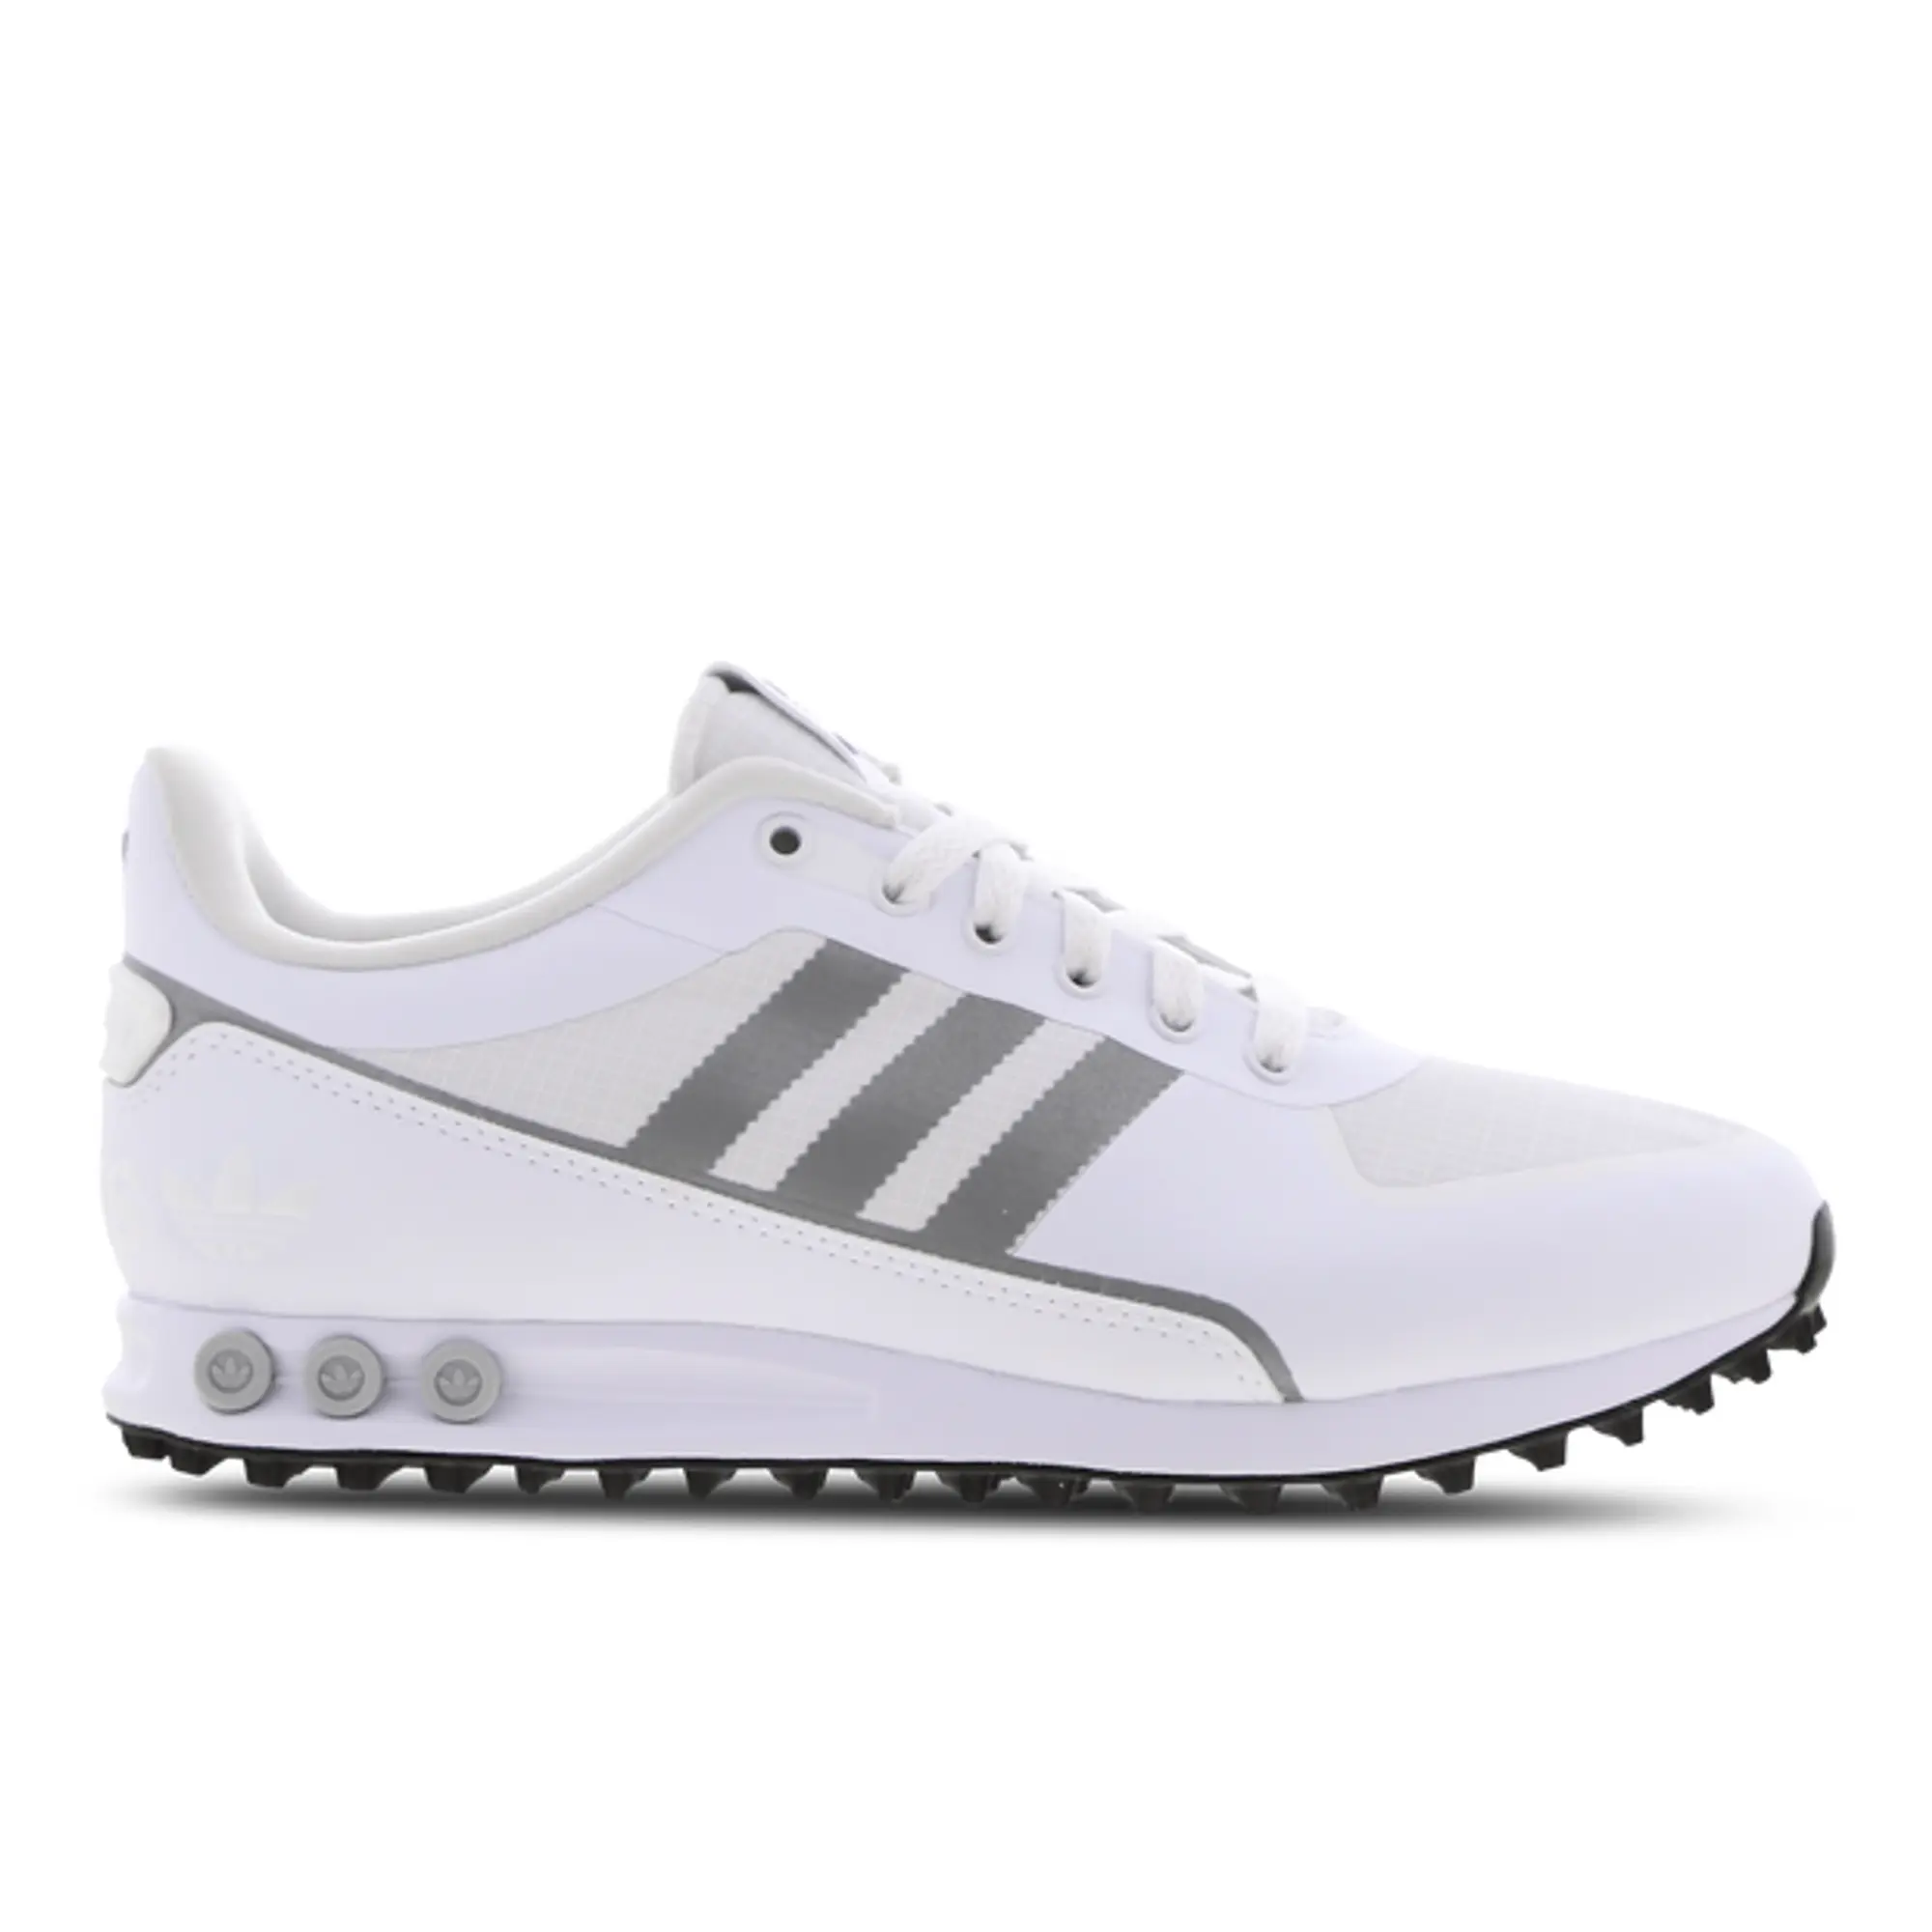 Adidas La Trainer 2 Xeno 2 - White